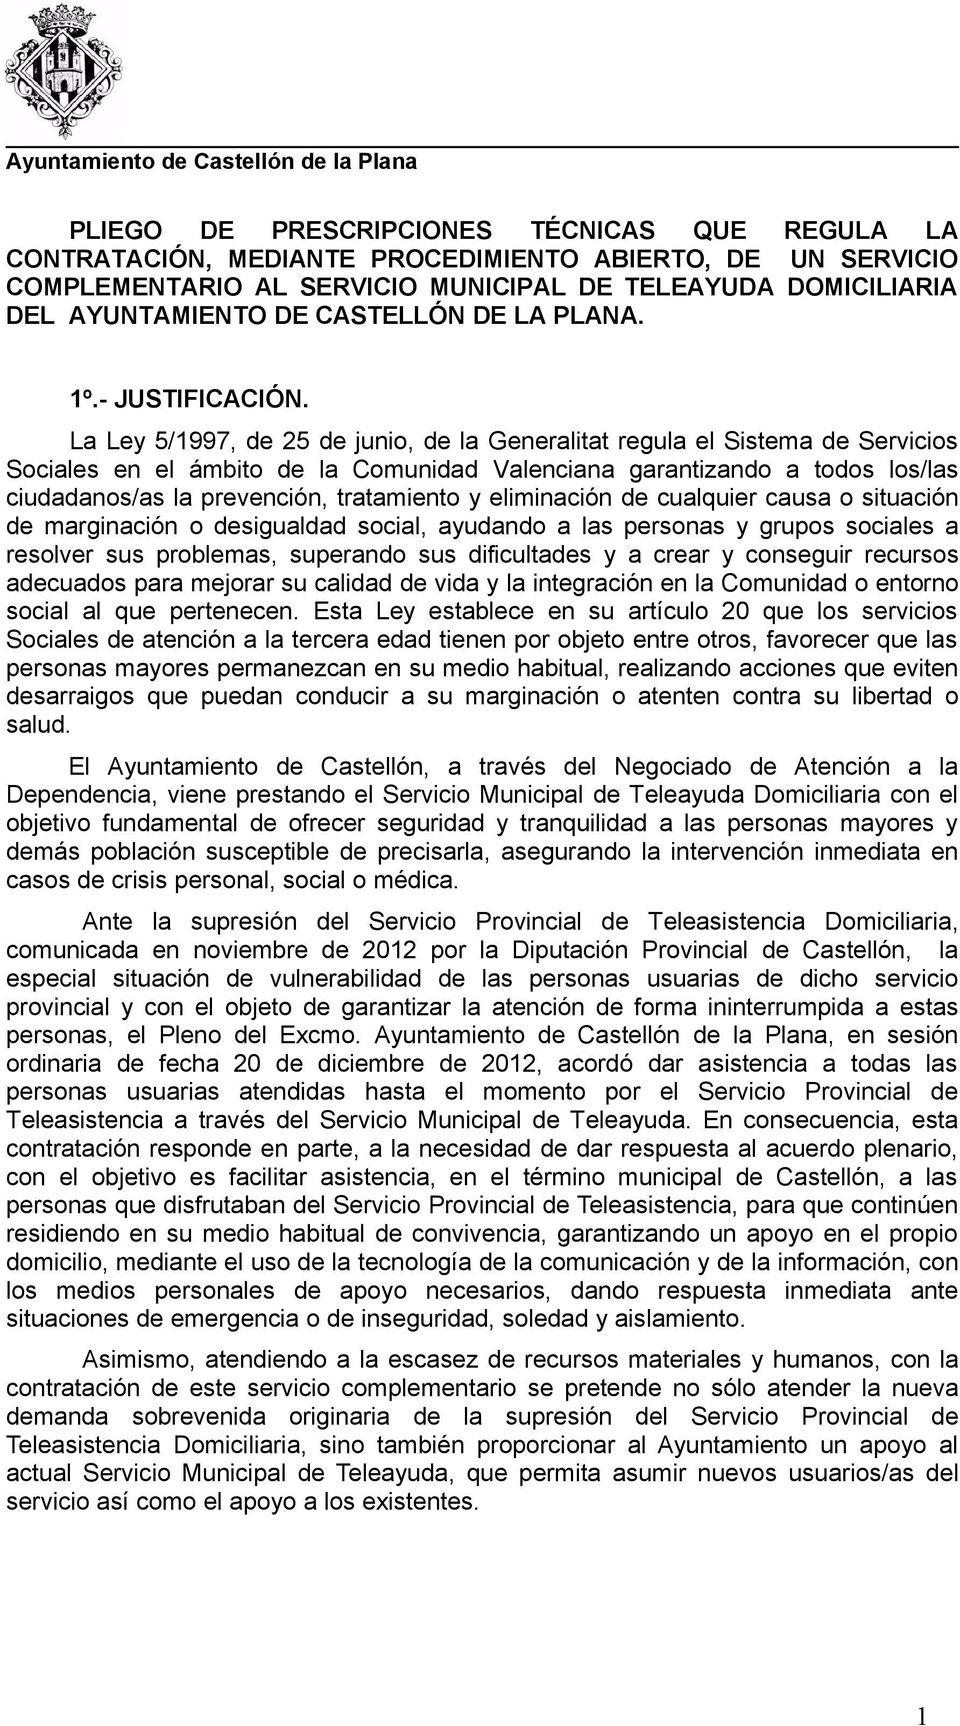 La Ley 5/1997, de 25 de junio, de la Generalitat regula el Sistema de Servicios Sociales en el ámbito de la Comunidad Valenciana garantizando a todos los/las ciudadanos/as la prevención, tratamiento